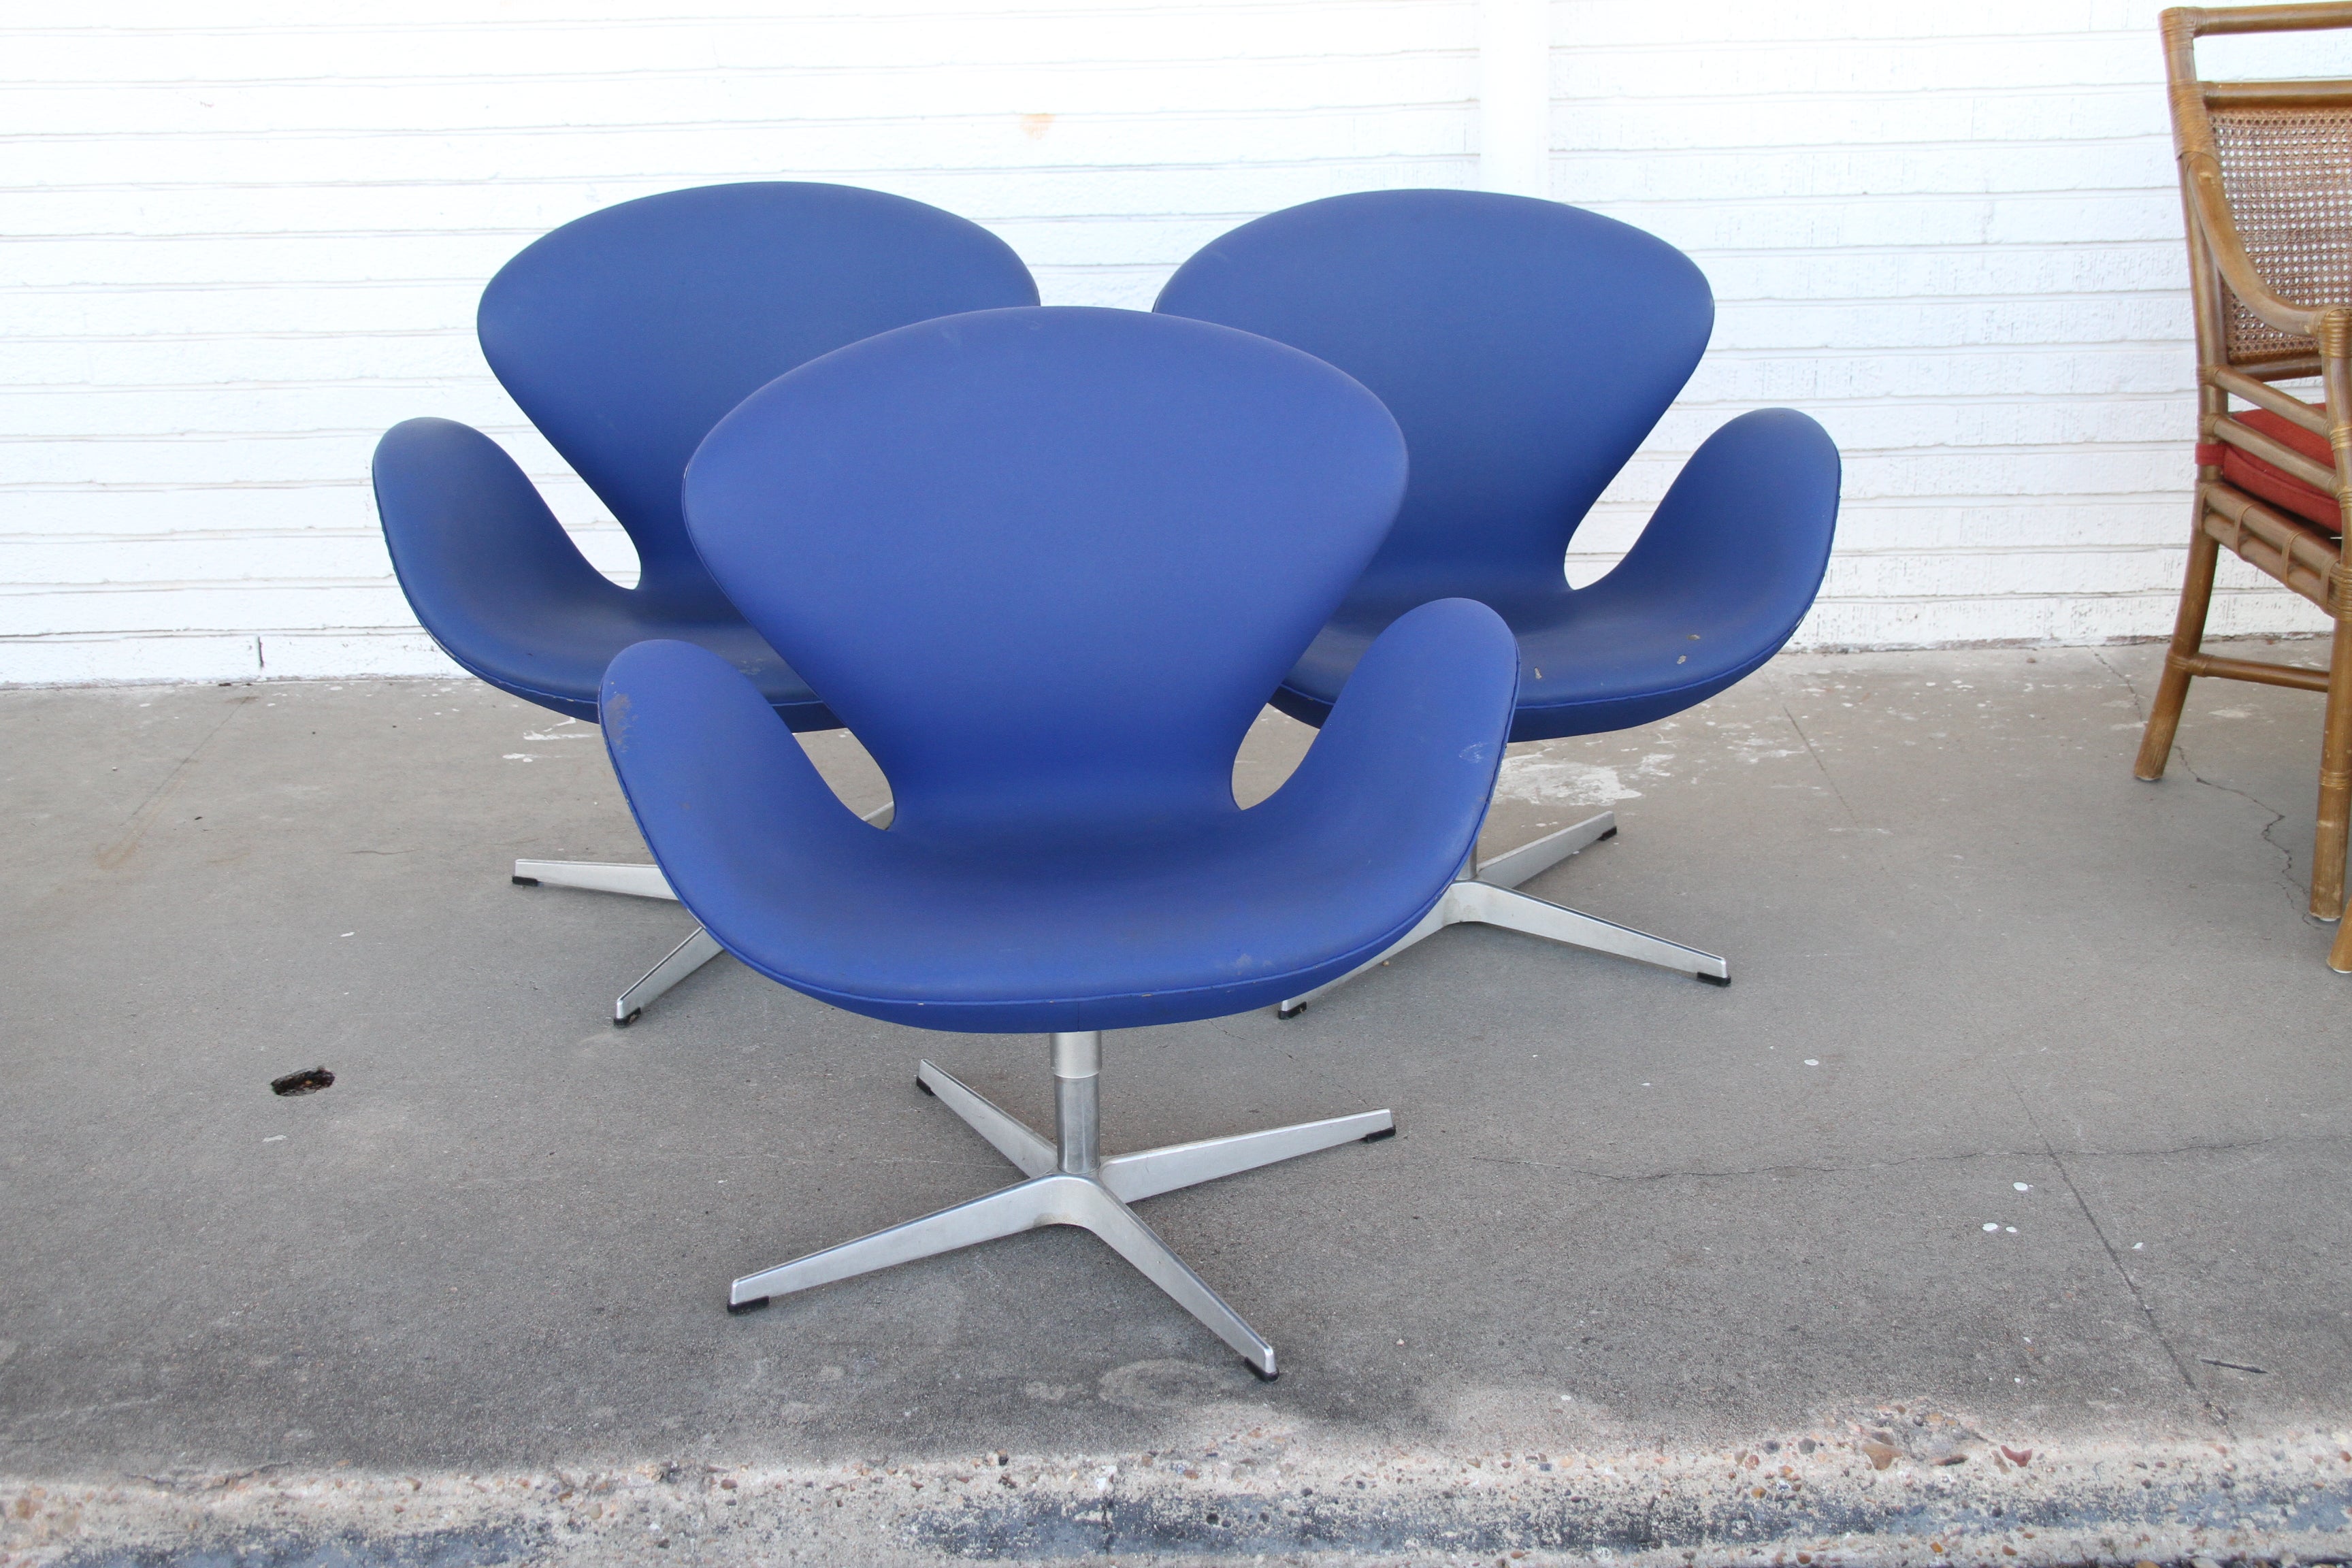 1 chaise de cygne Arne Jacobsen.

Design/One, 1958.


Conçue pour le SAS Royal Hotel de Copenhague, dont le designer Arne Jacobsen était l'architecte, la Swan Chair (1958) permettait aux clients de tourner sur sa base pivotante, devenant ainsi des